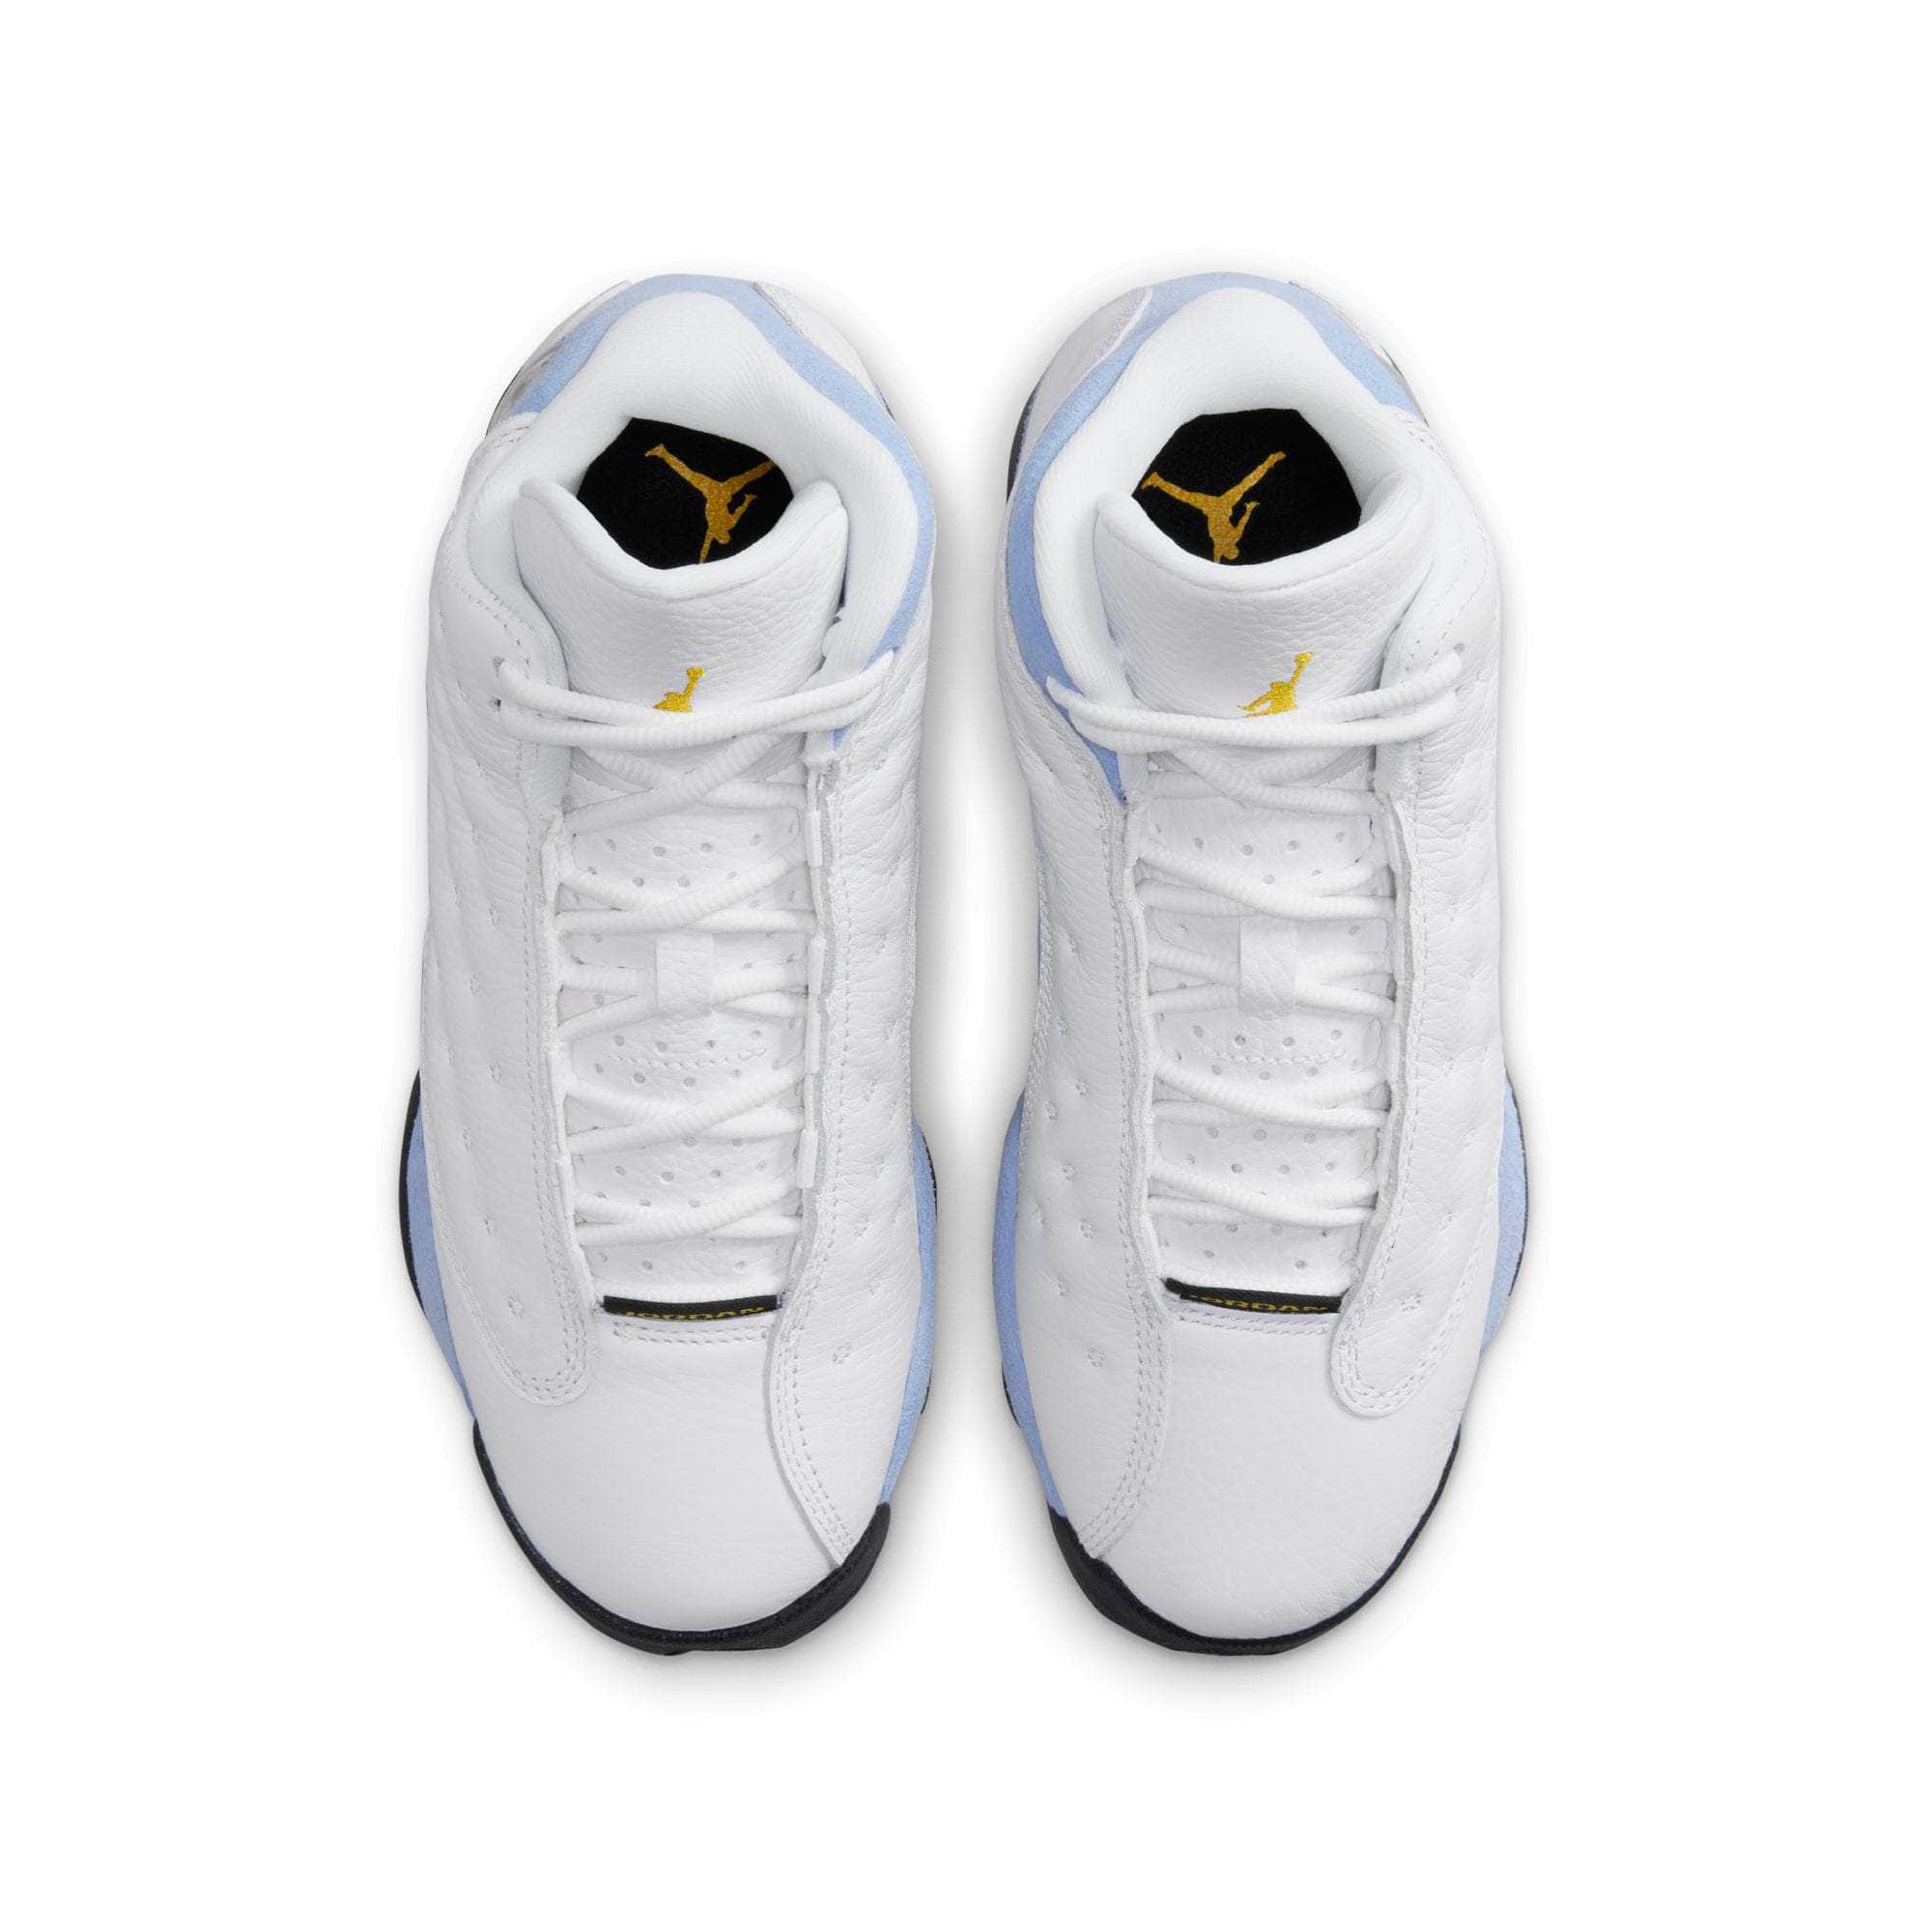 Air Jordan Footwear Air Jordan 13 Retro “Blue Grey” - Boy's GS